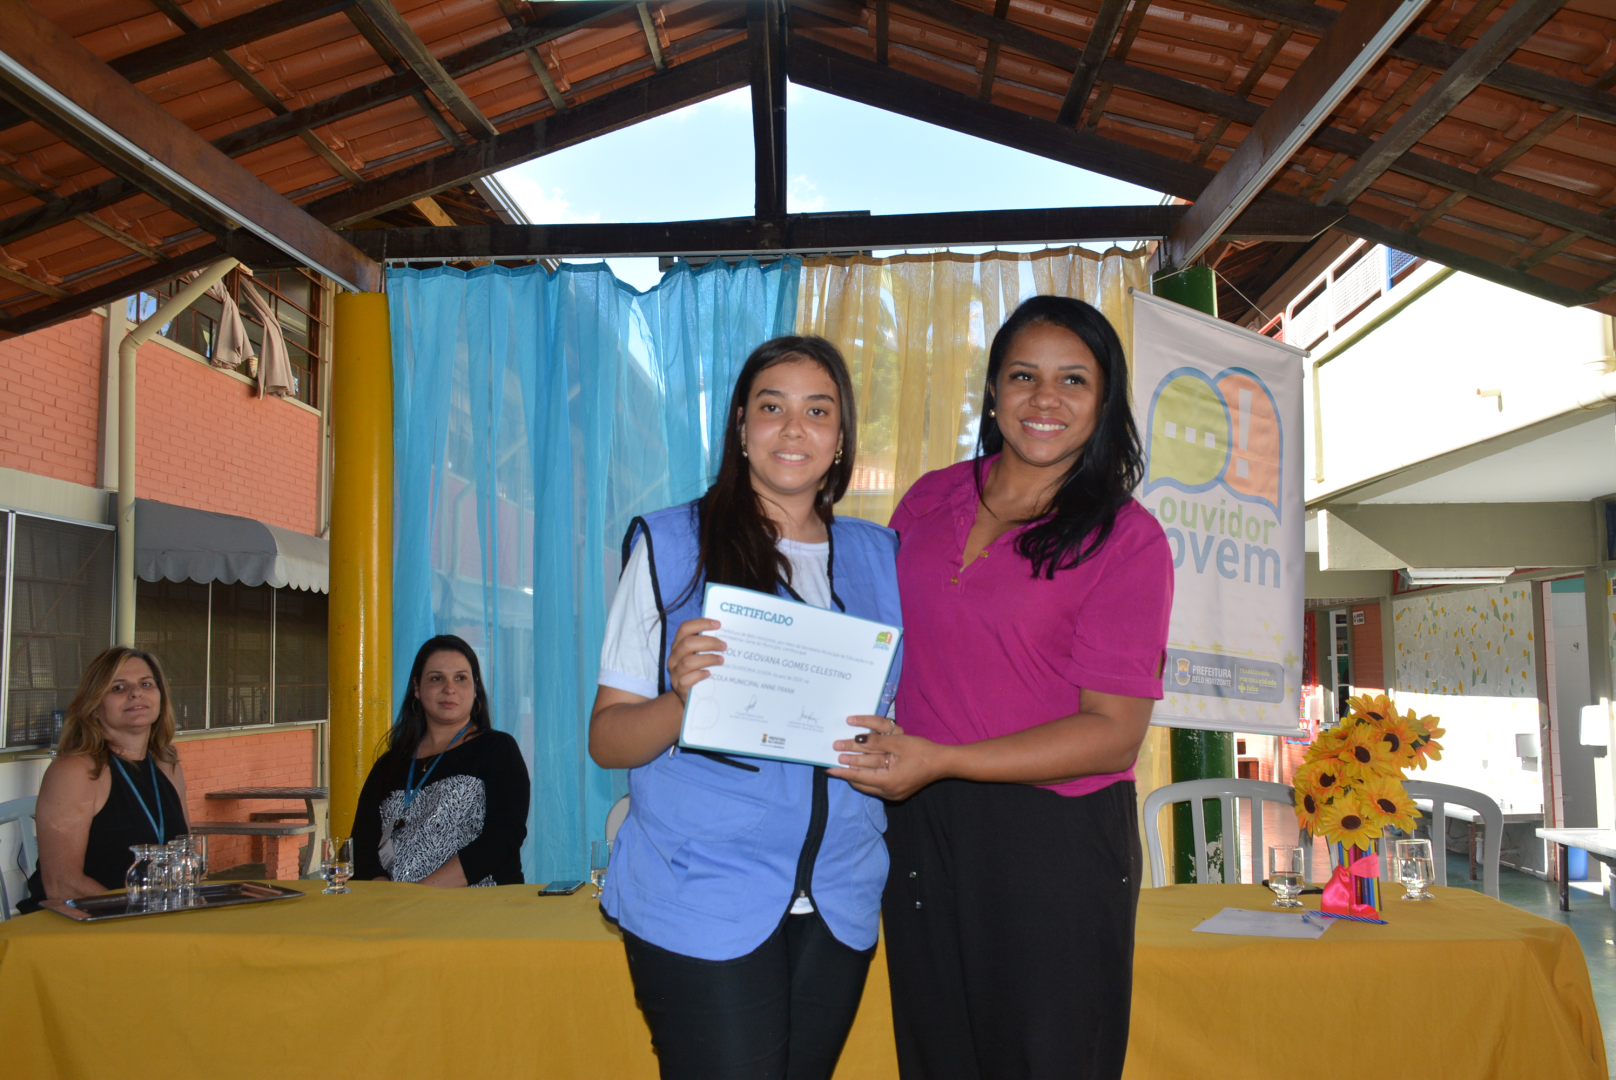 Foto da ouvidora jovem recebendo o certificado